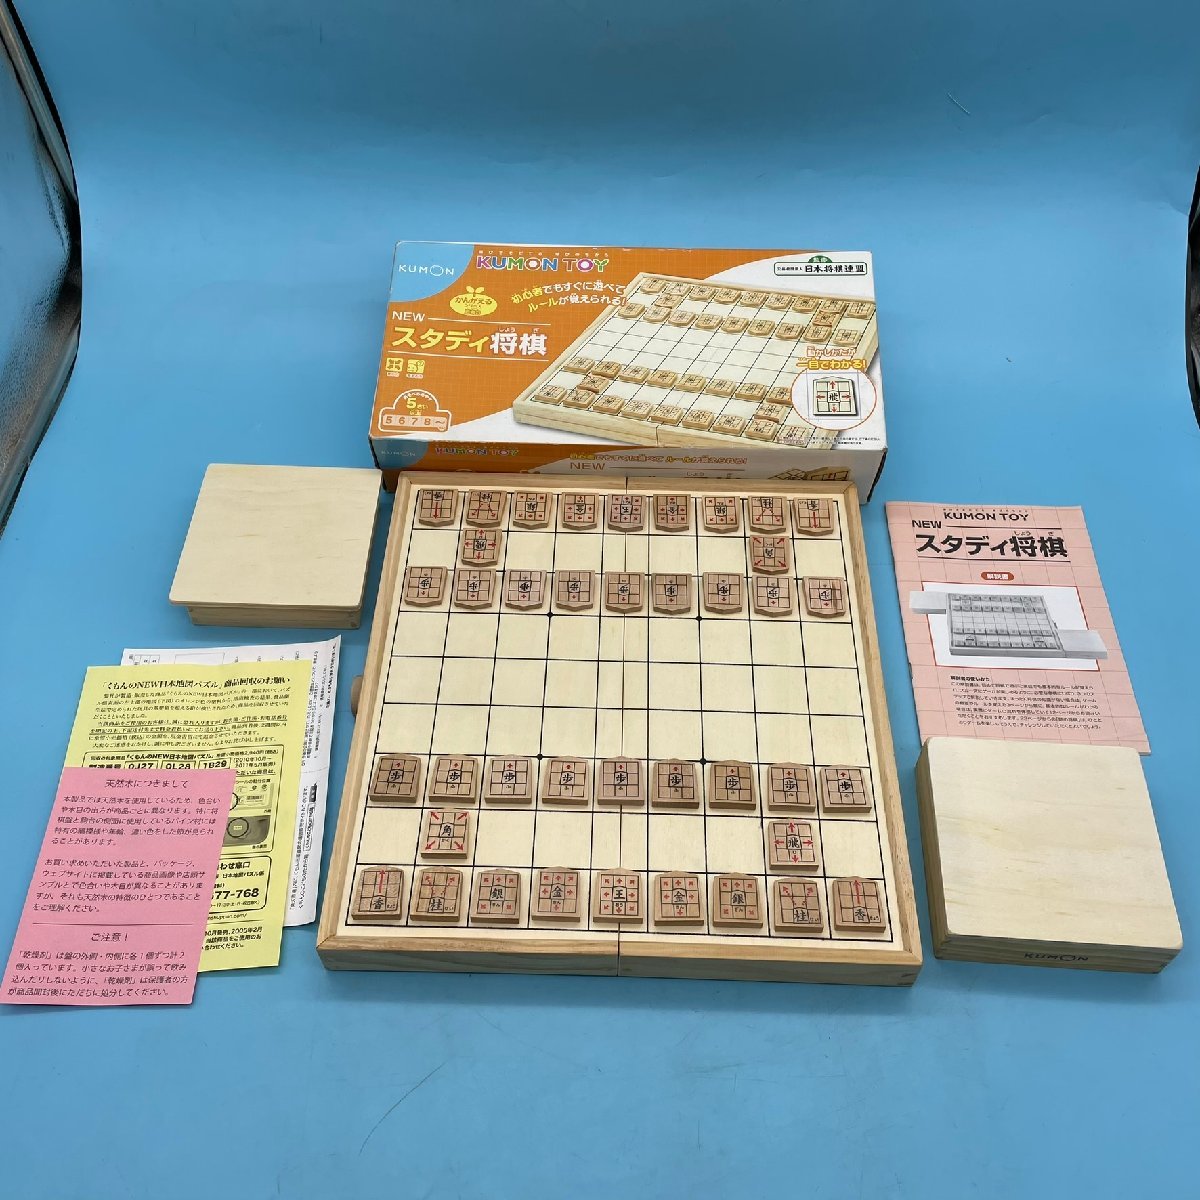 [A9328P007] старт ti shogi KUMON TOY.... документ shogi shogi запись shogi пешка ..... серии 5 лет и больше игра настольная игра bodoge развивающая игрушка 